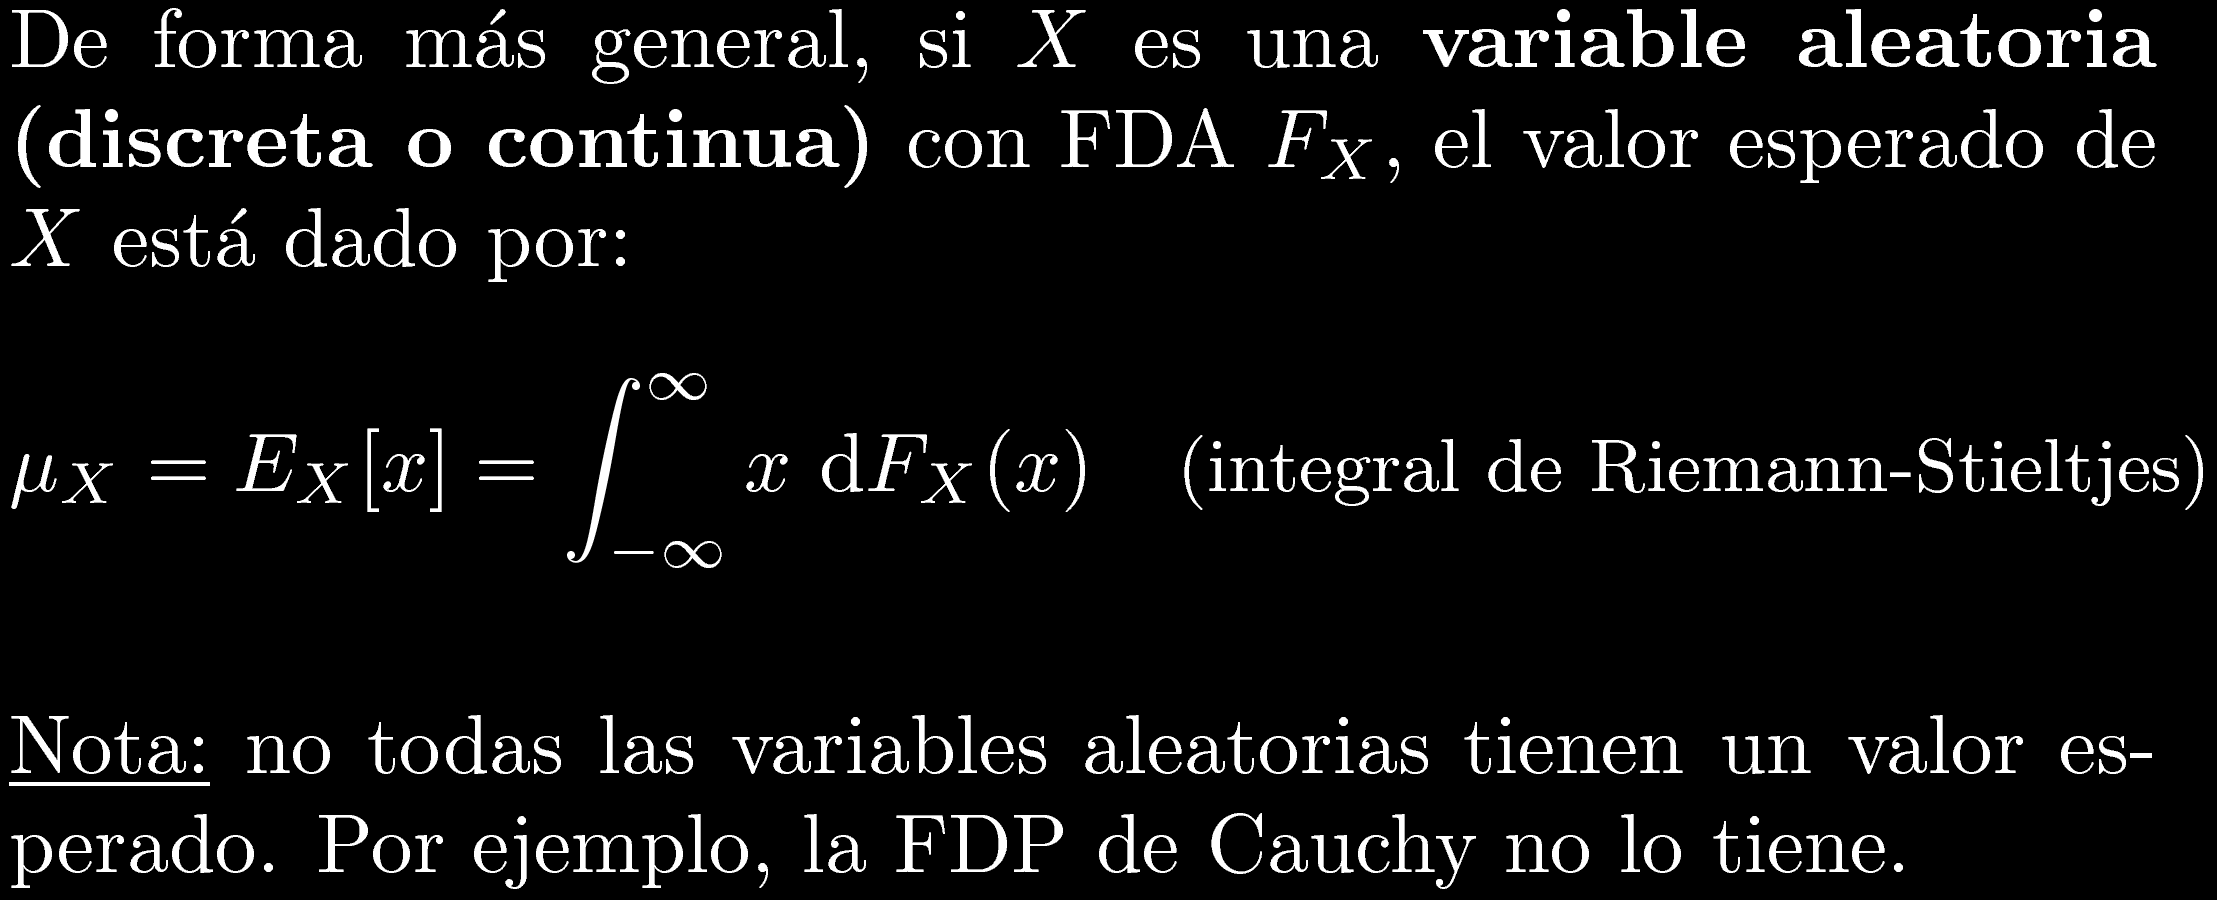 Valor esperado de una variable aleatoria Ver: http://en.wikipedia.